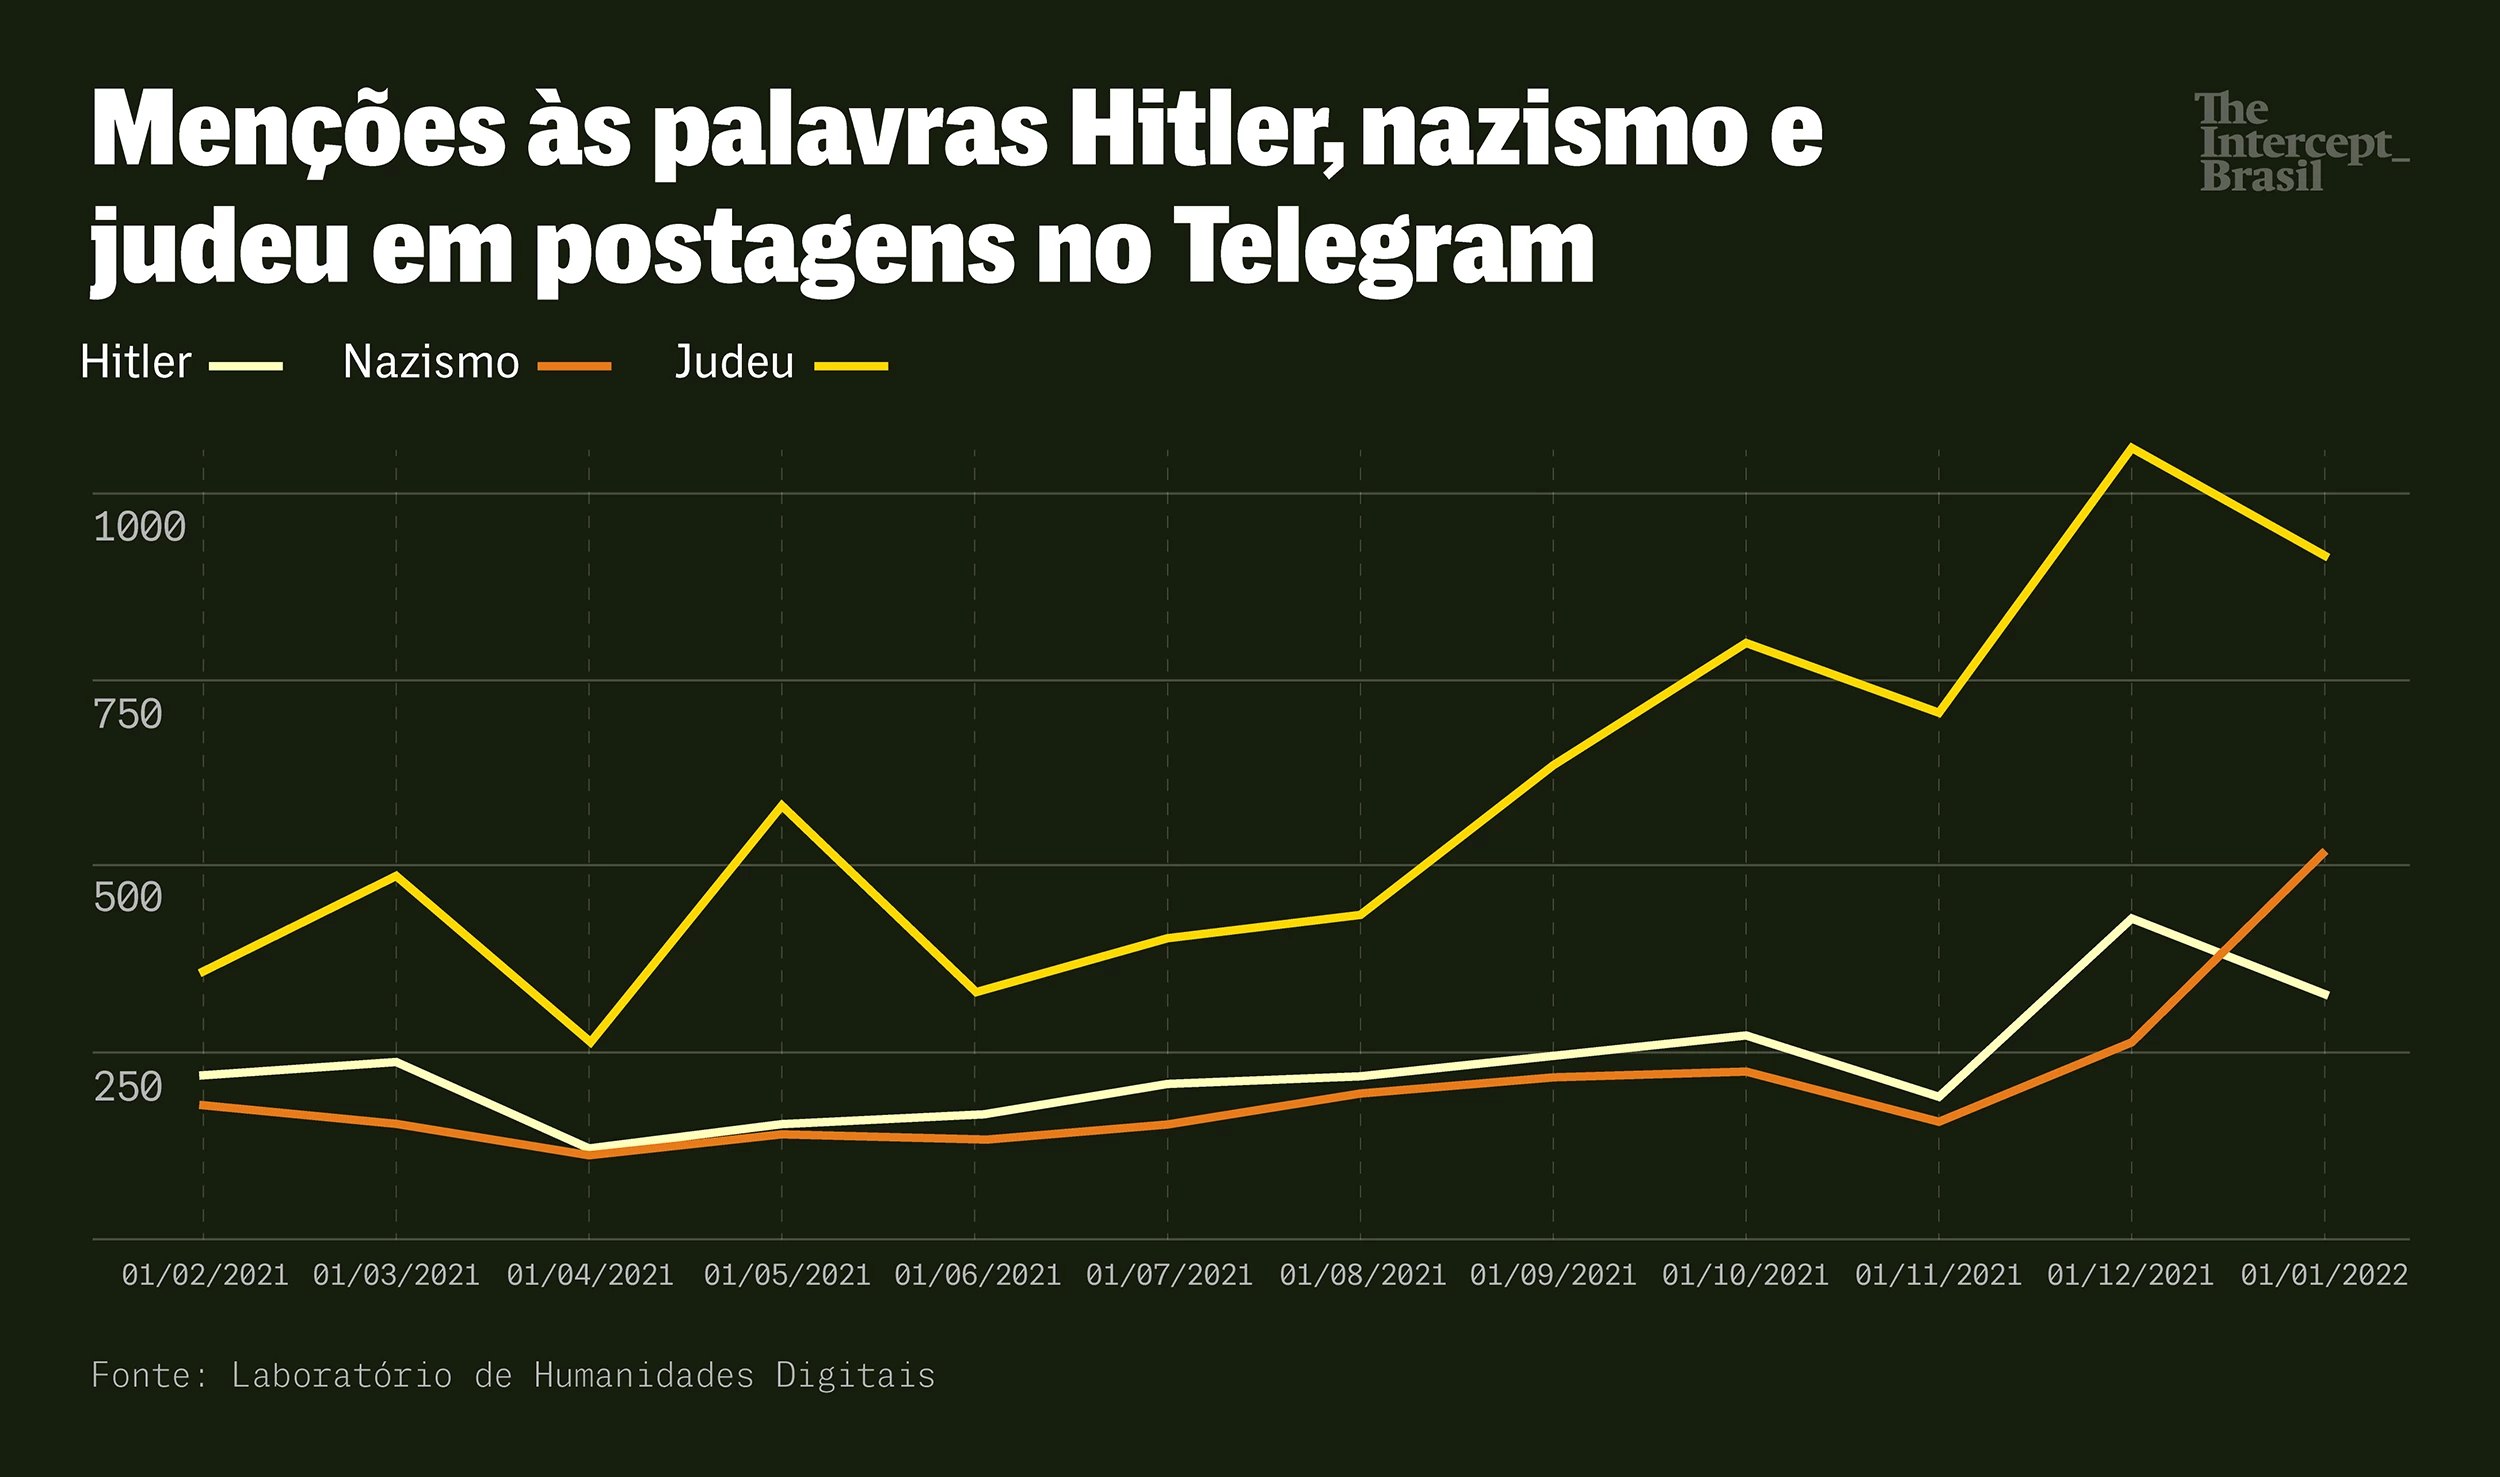 Menções às palavras Hitler, nazismo e judeu em postagens no Telegram.